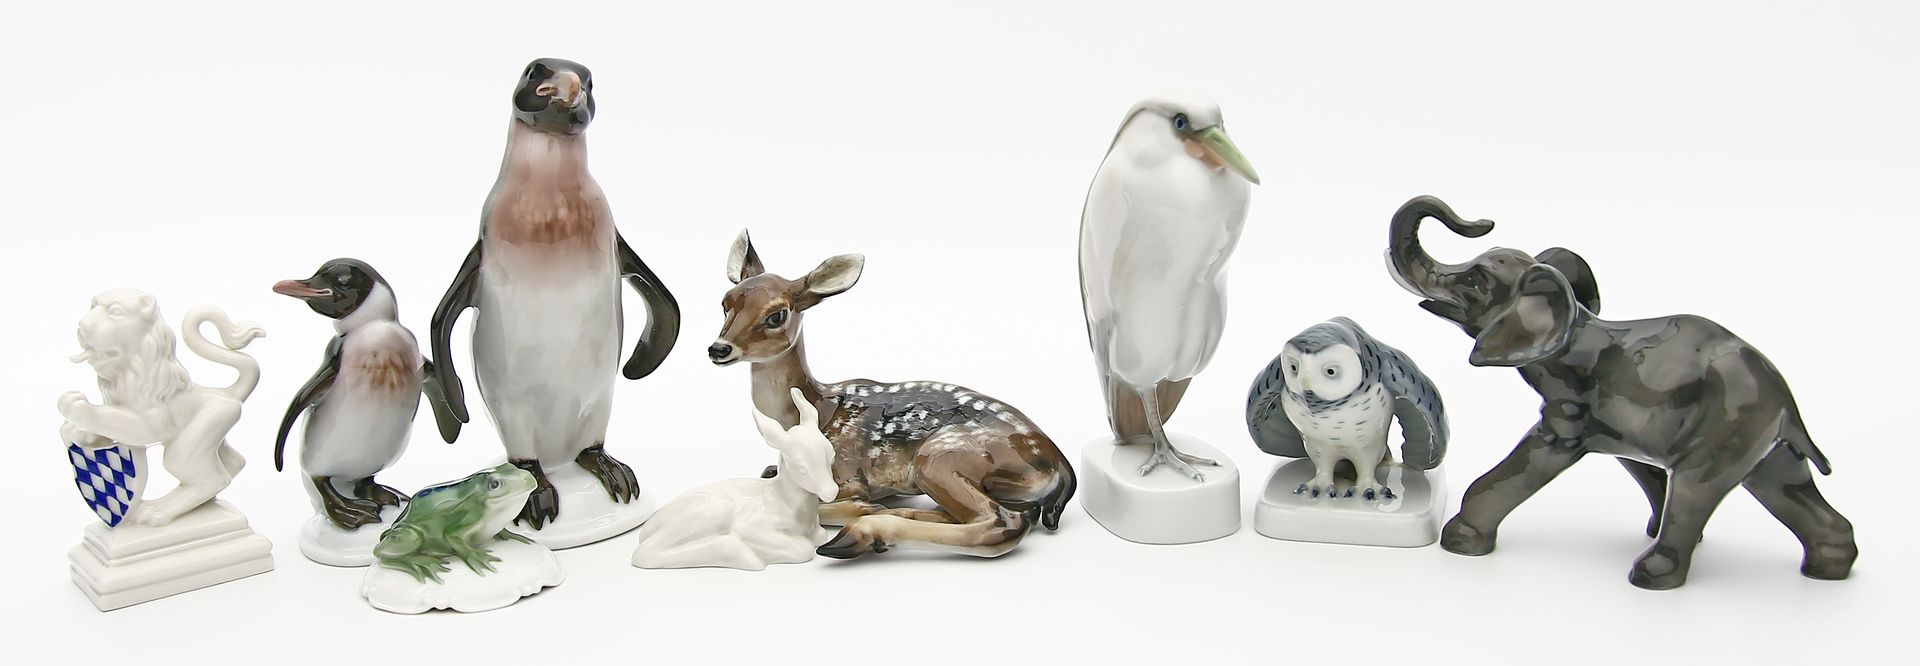 Sammlung von neun Tierskulpturen: